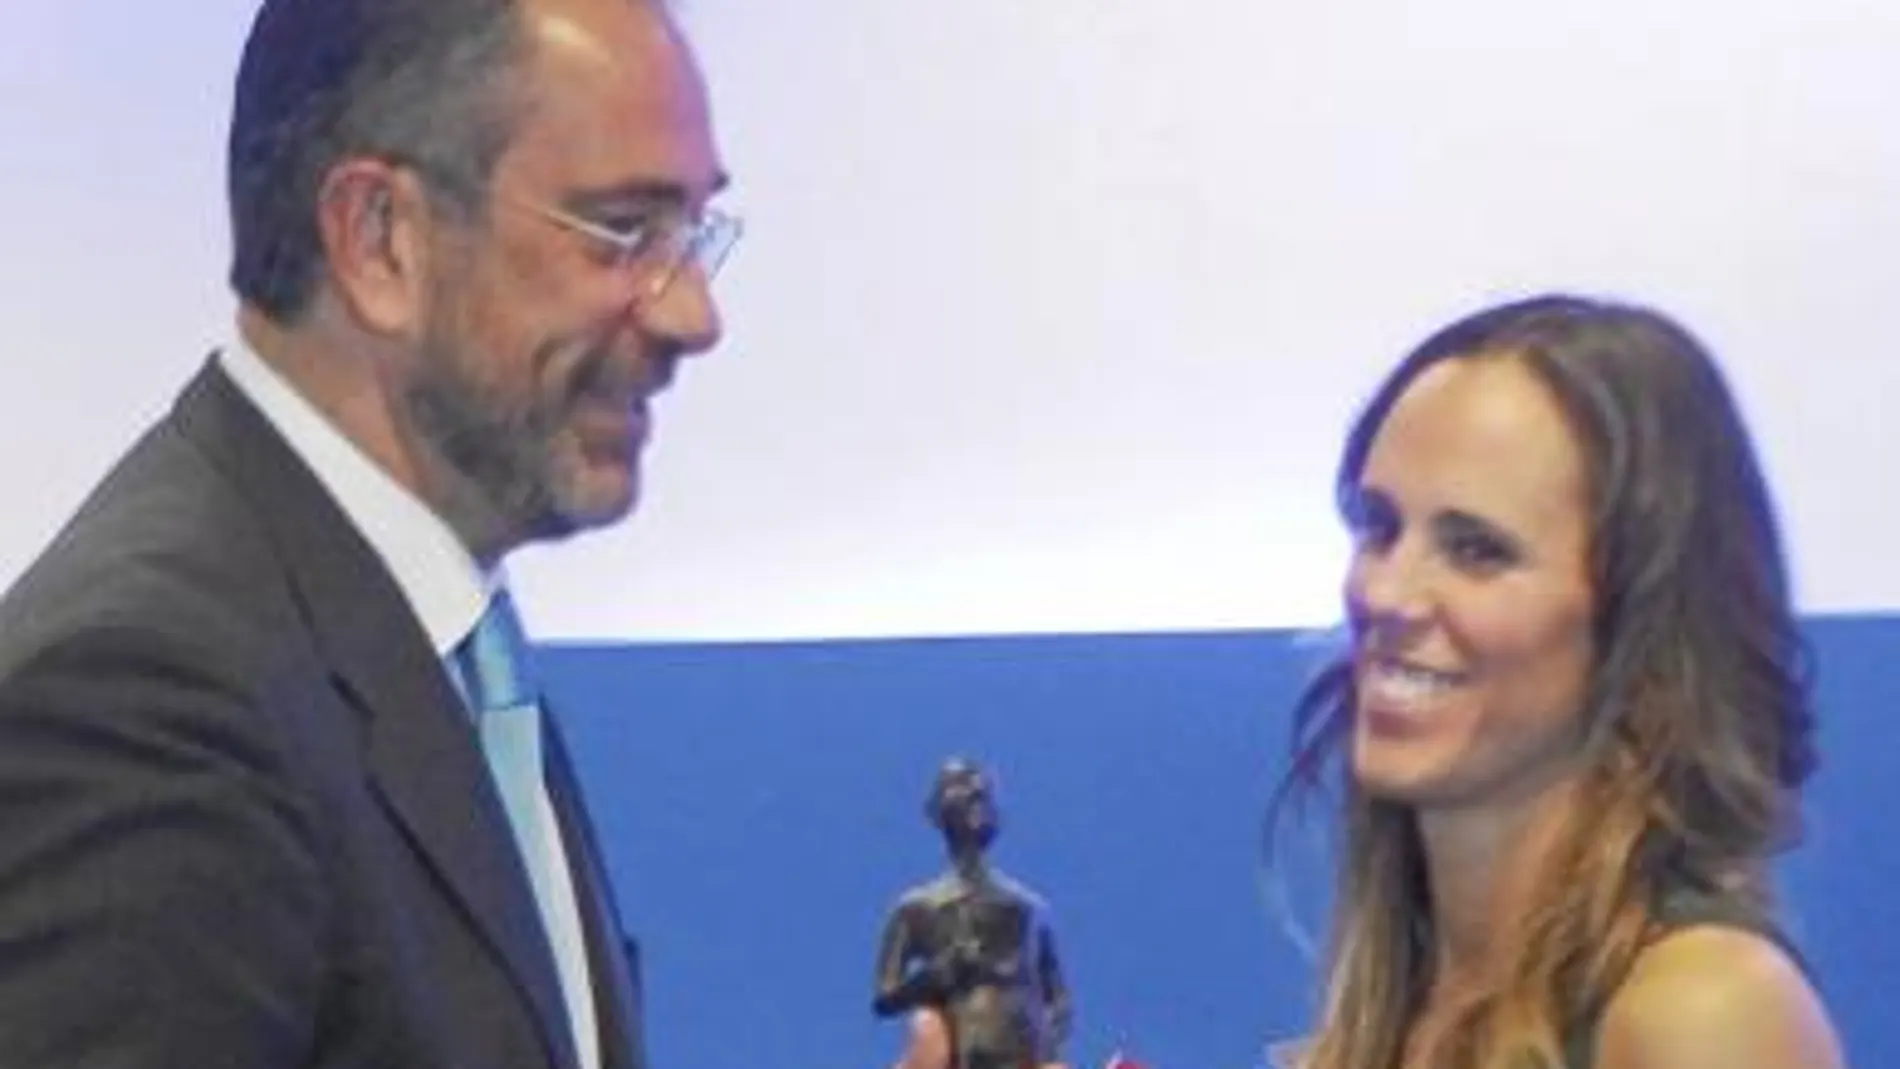 Amaya Valdemoro recibió el Premio al Personaje del Año